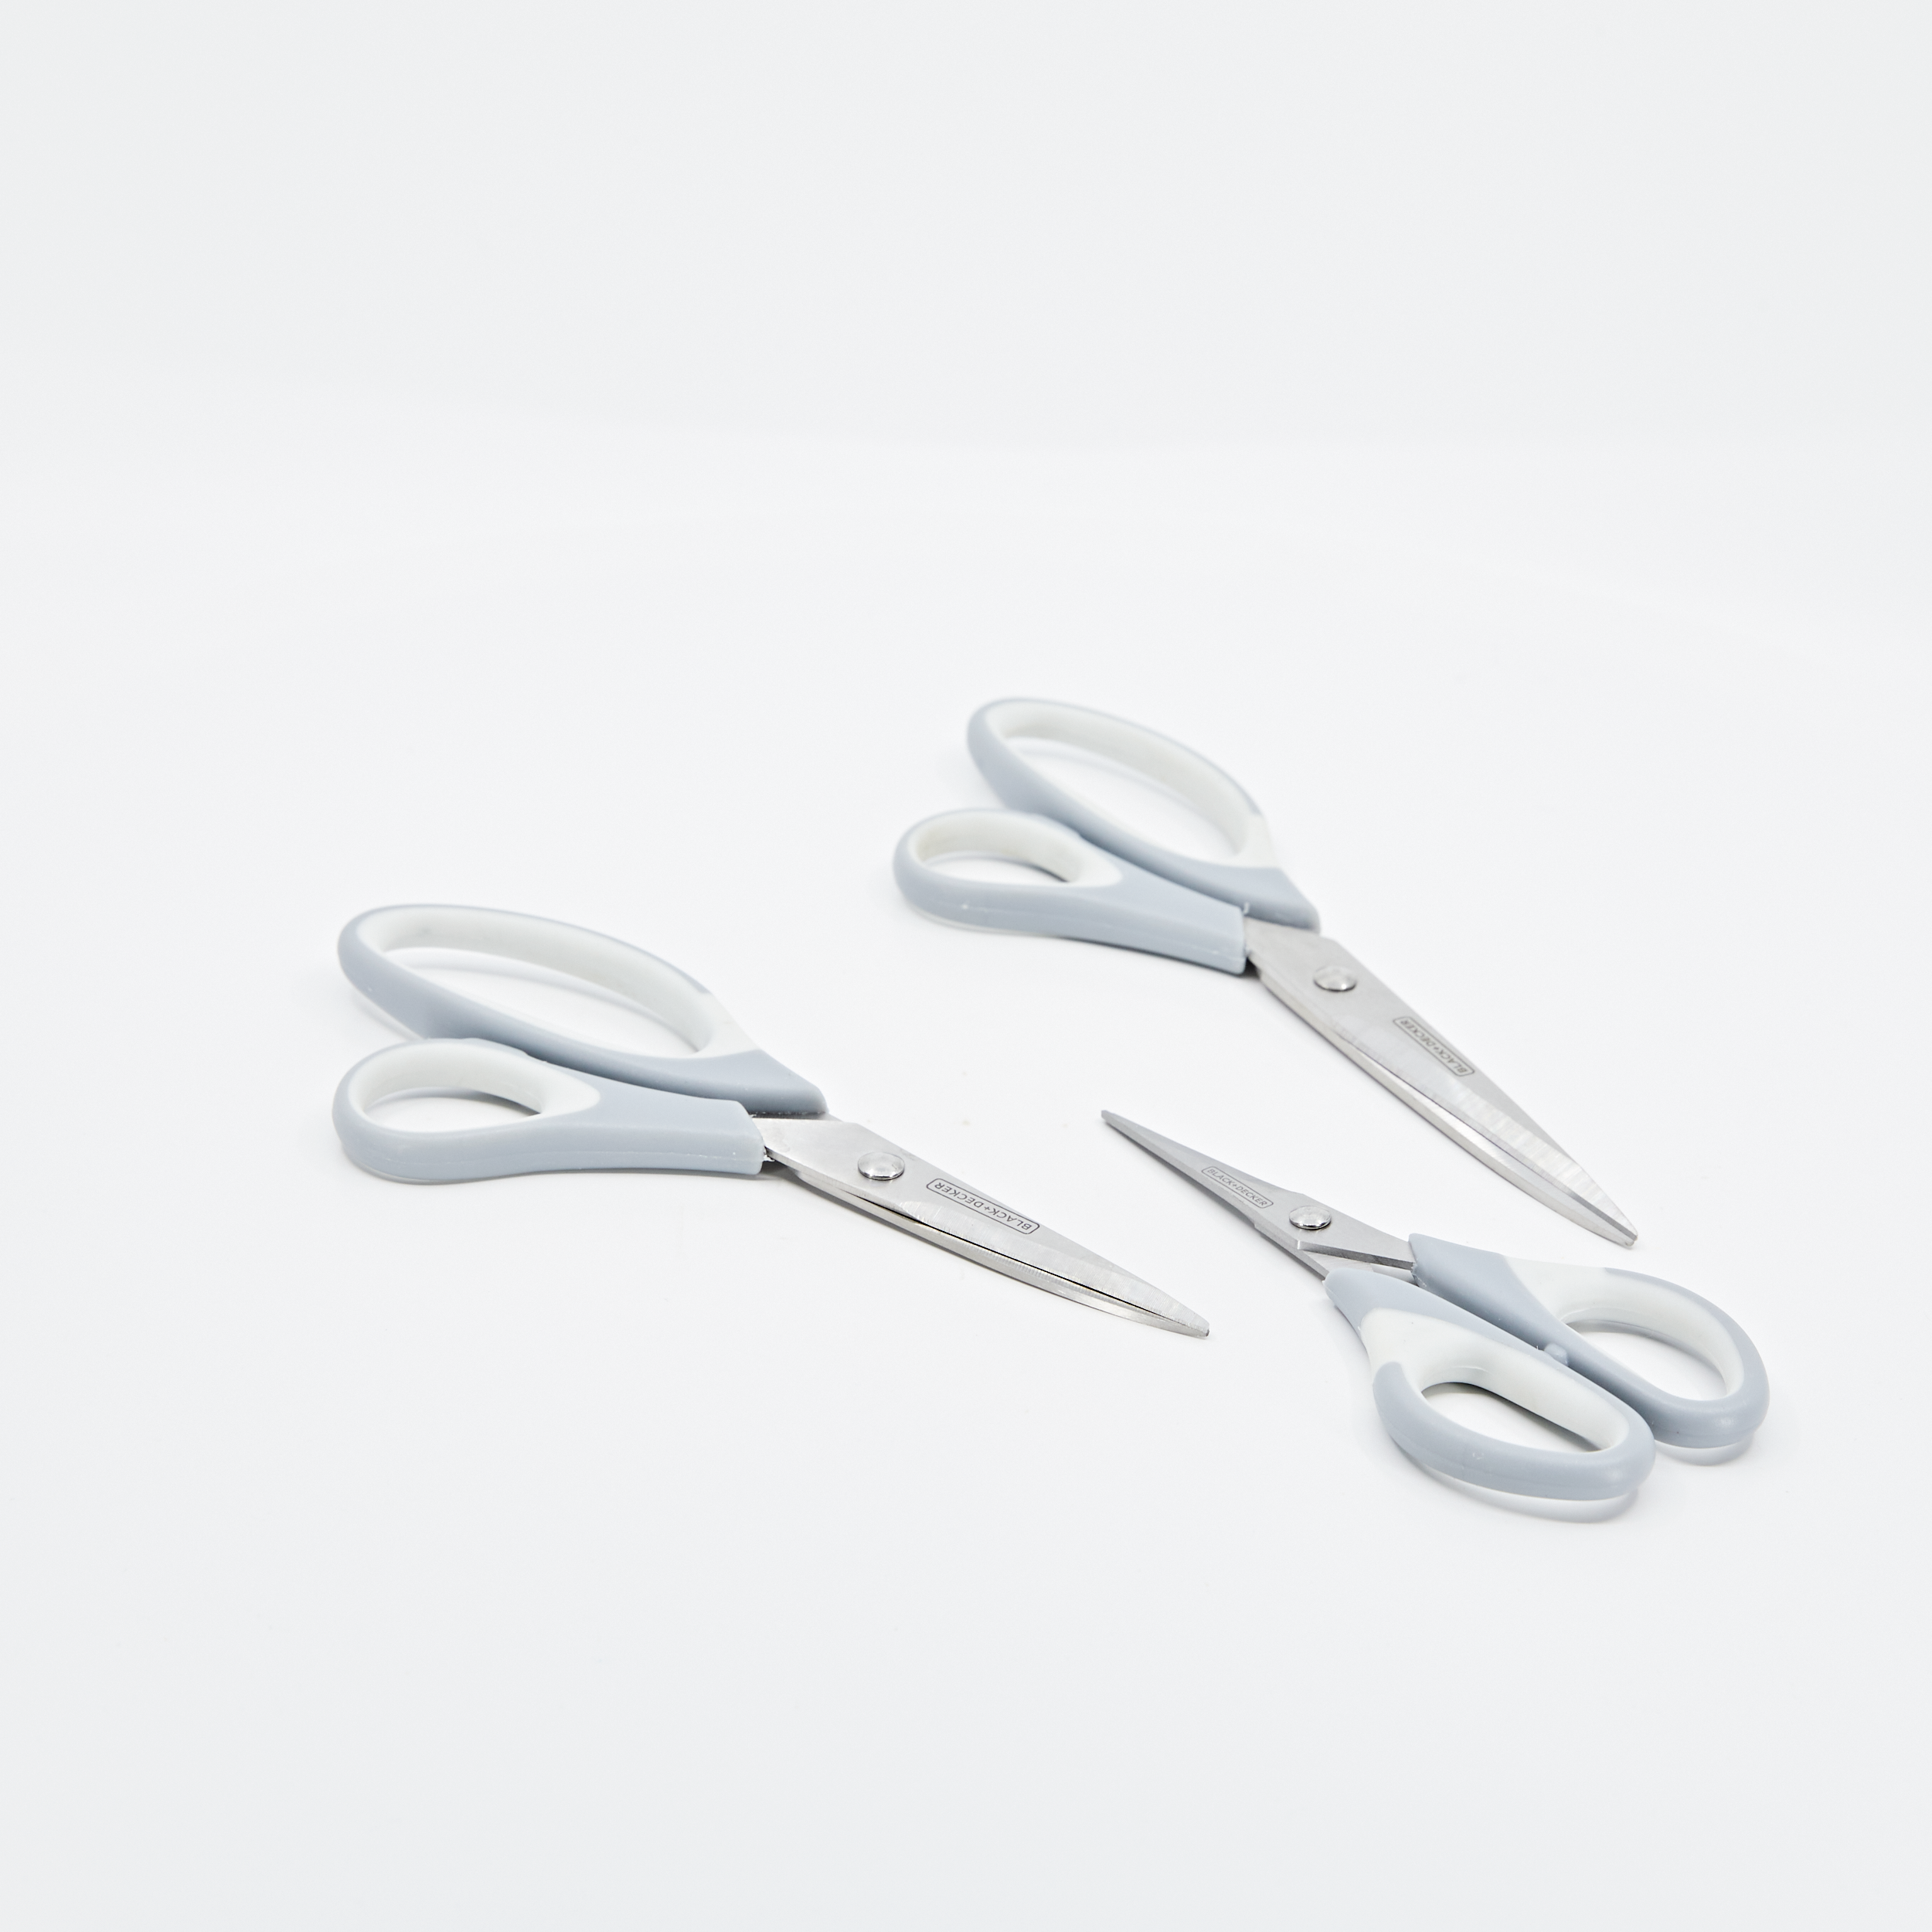 BLACK+DECKER Scissors, Multi-Pack, White (BDHT20001)